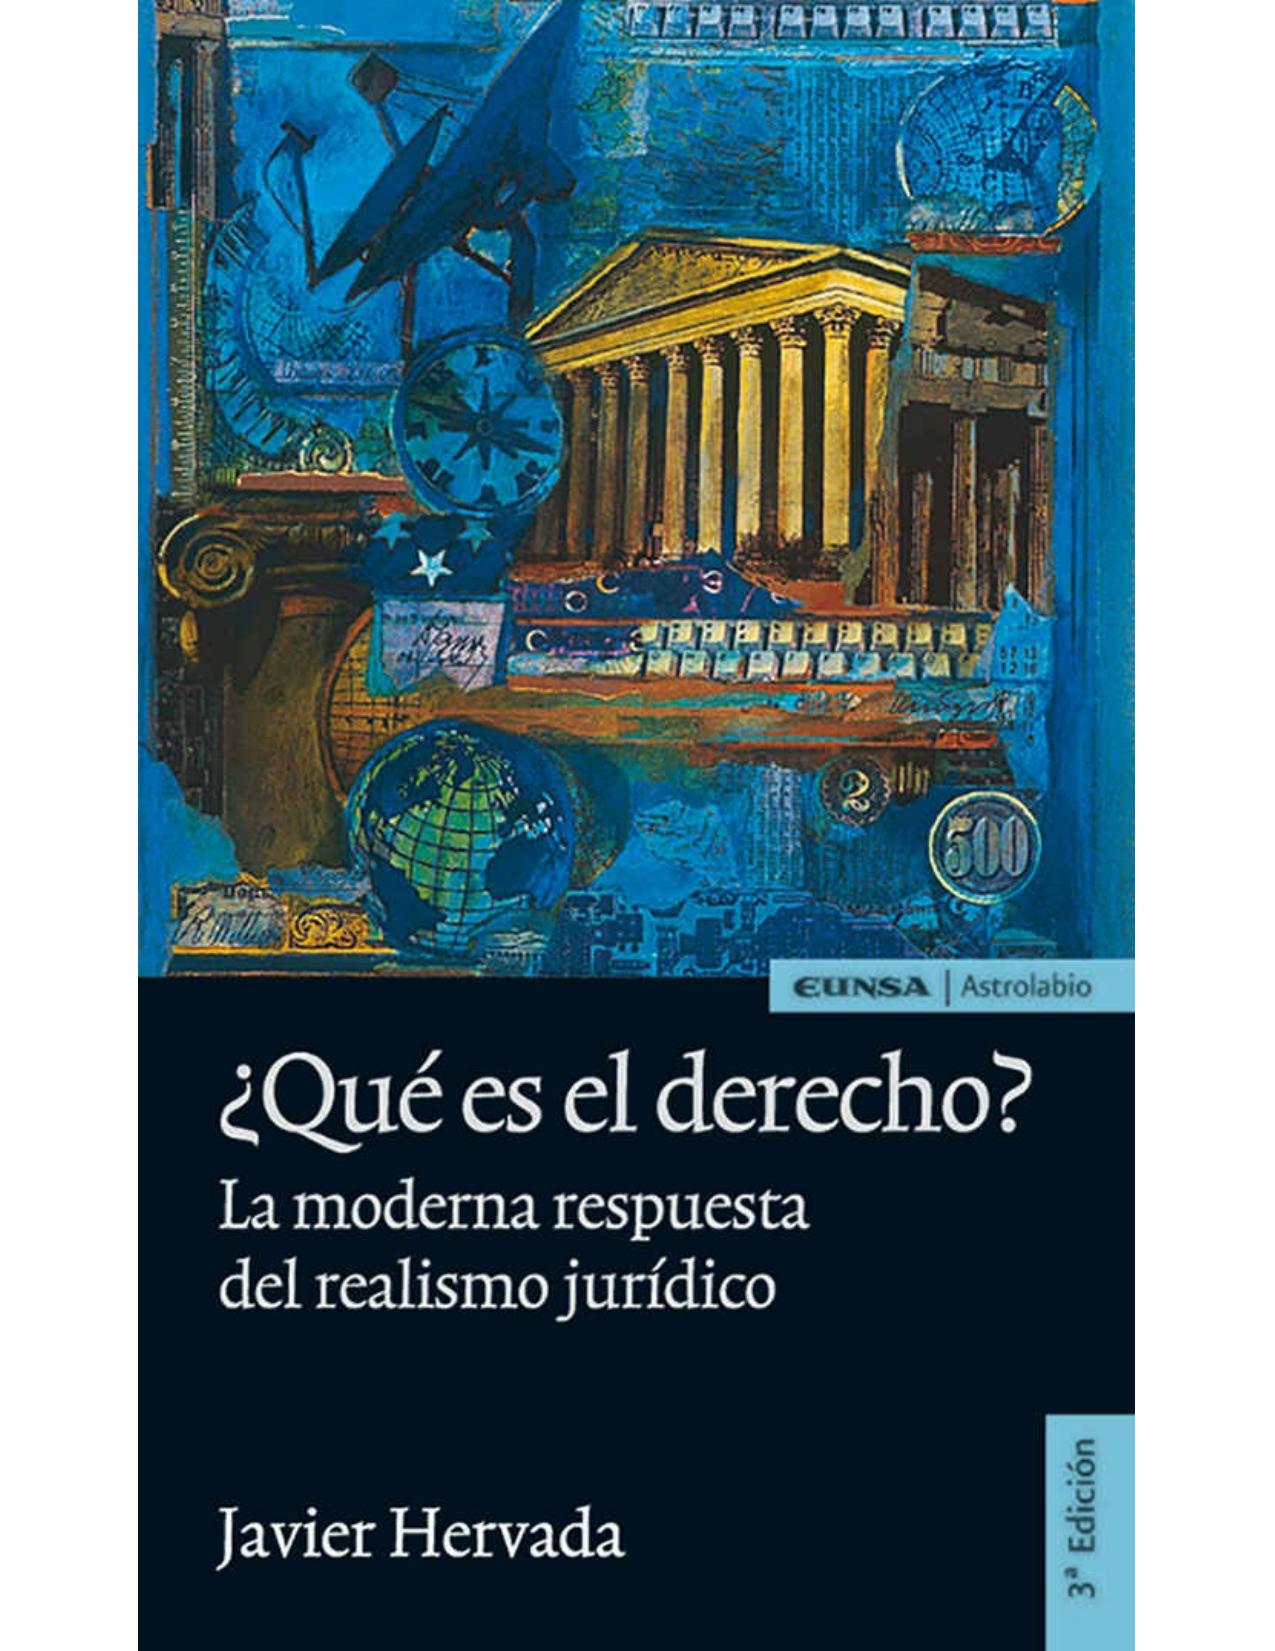 ¿Qué es el derecho?: La moderna respuesta del realismo jurídico (Astrolabio Derecho) (Spanish Edition)